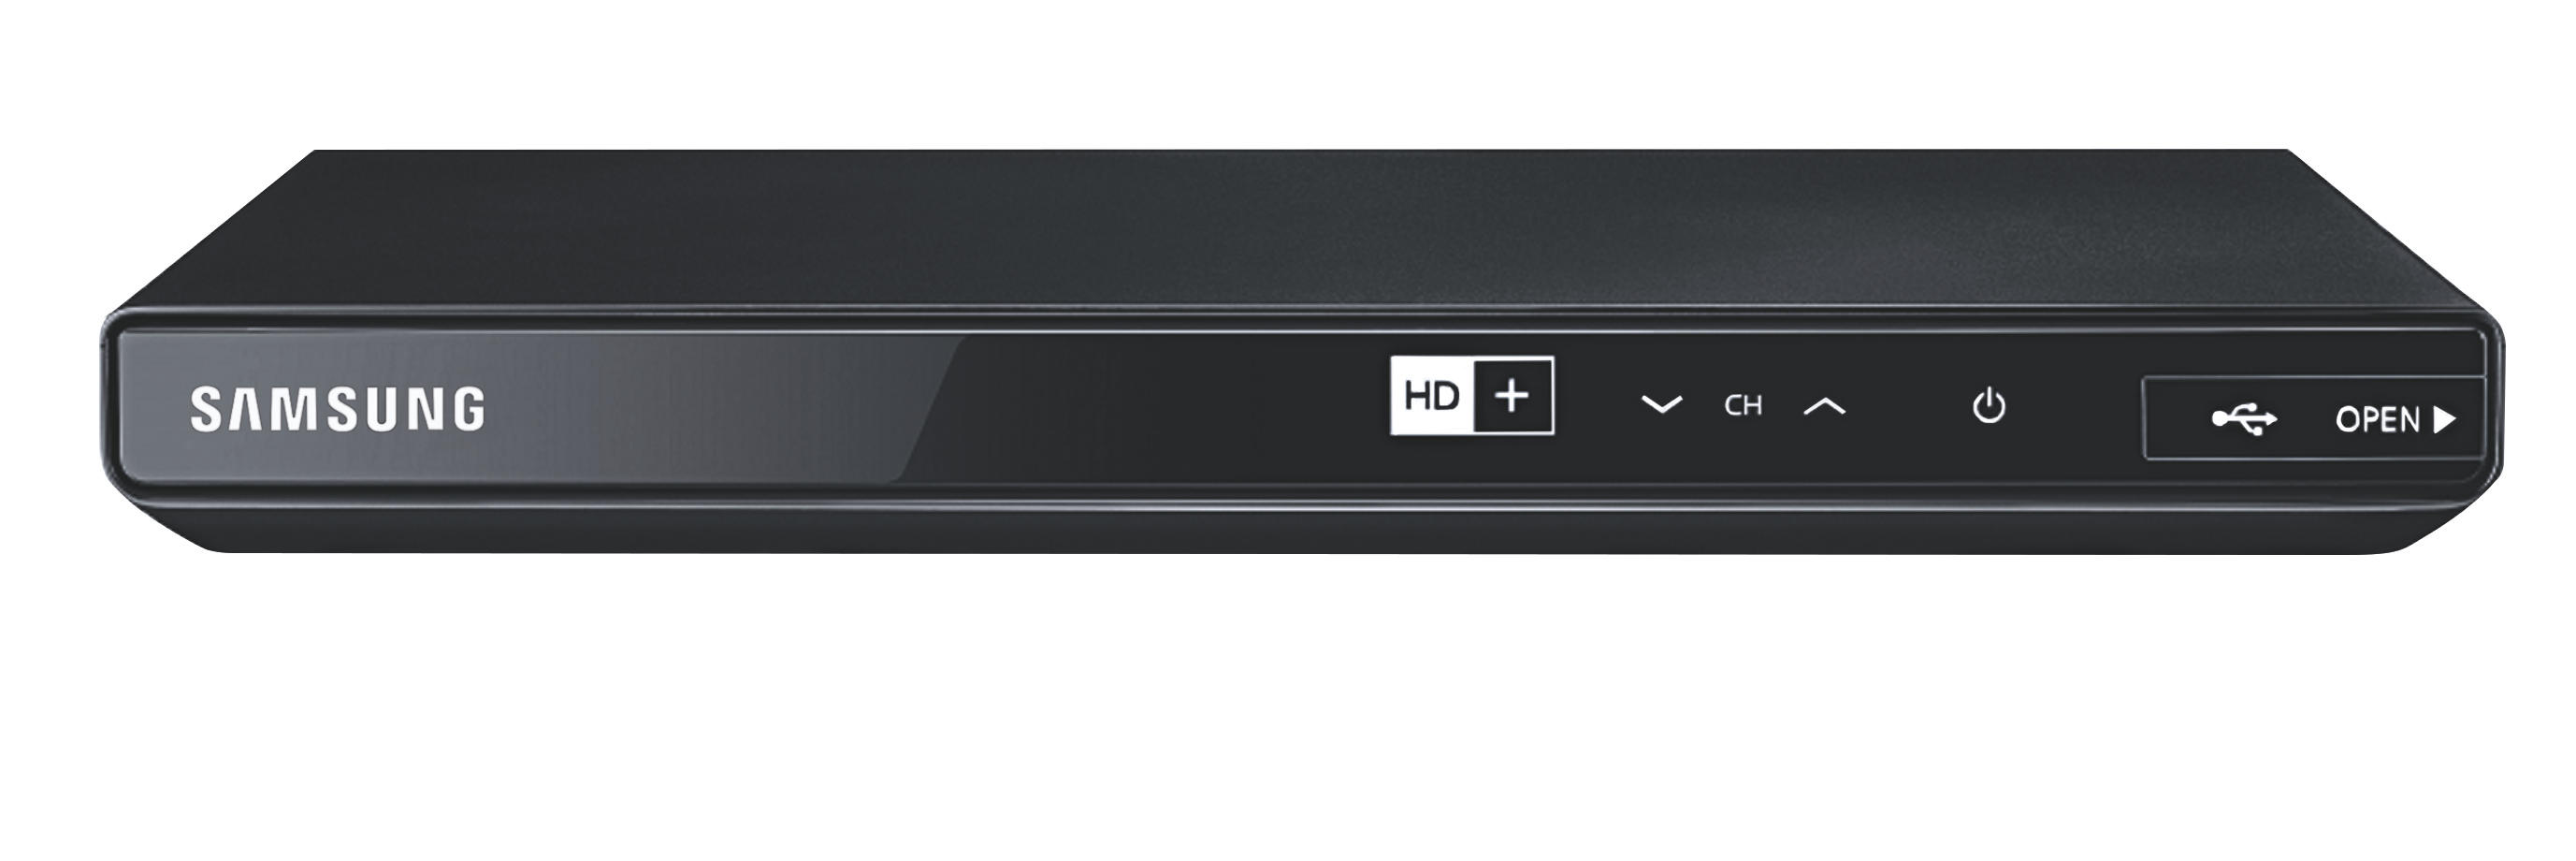 540 SM Karte SAMSUNG Receiver GX-SM DVB-S2, HD+ Schwarz) DVB-S, inklusive, DVB-S2 (HDTV,